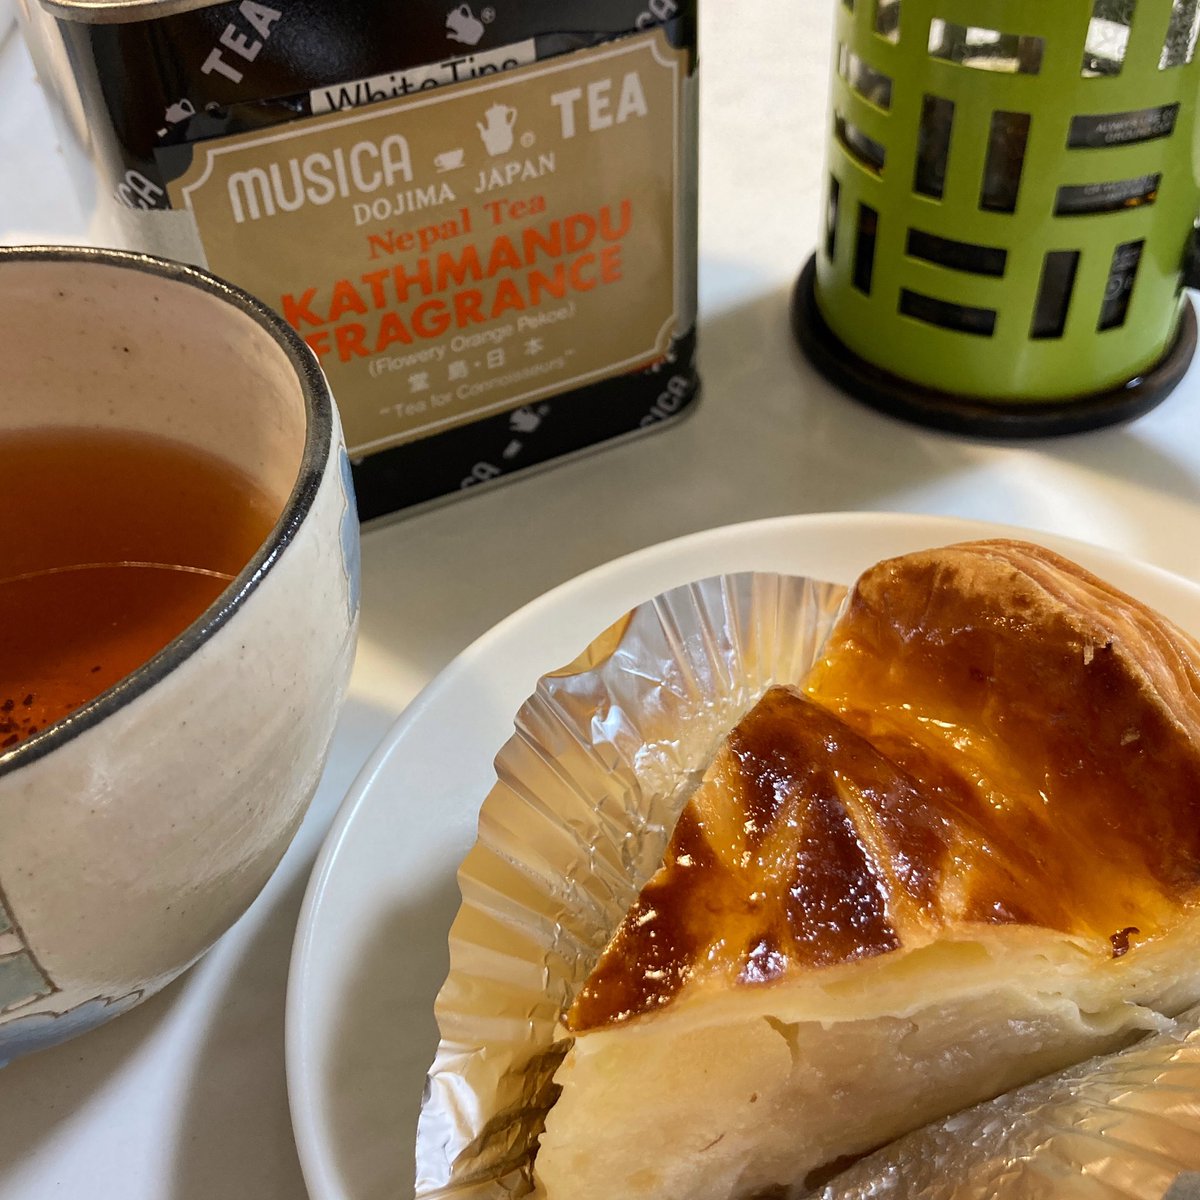 test ツイッターメディア - 紅茶の時間 近江屋洋菓子店のアップルパイとともに 甘酸っぱいリンゴとパリッとしたパイがまいう！ https://t.co/lv6JtCSU3p